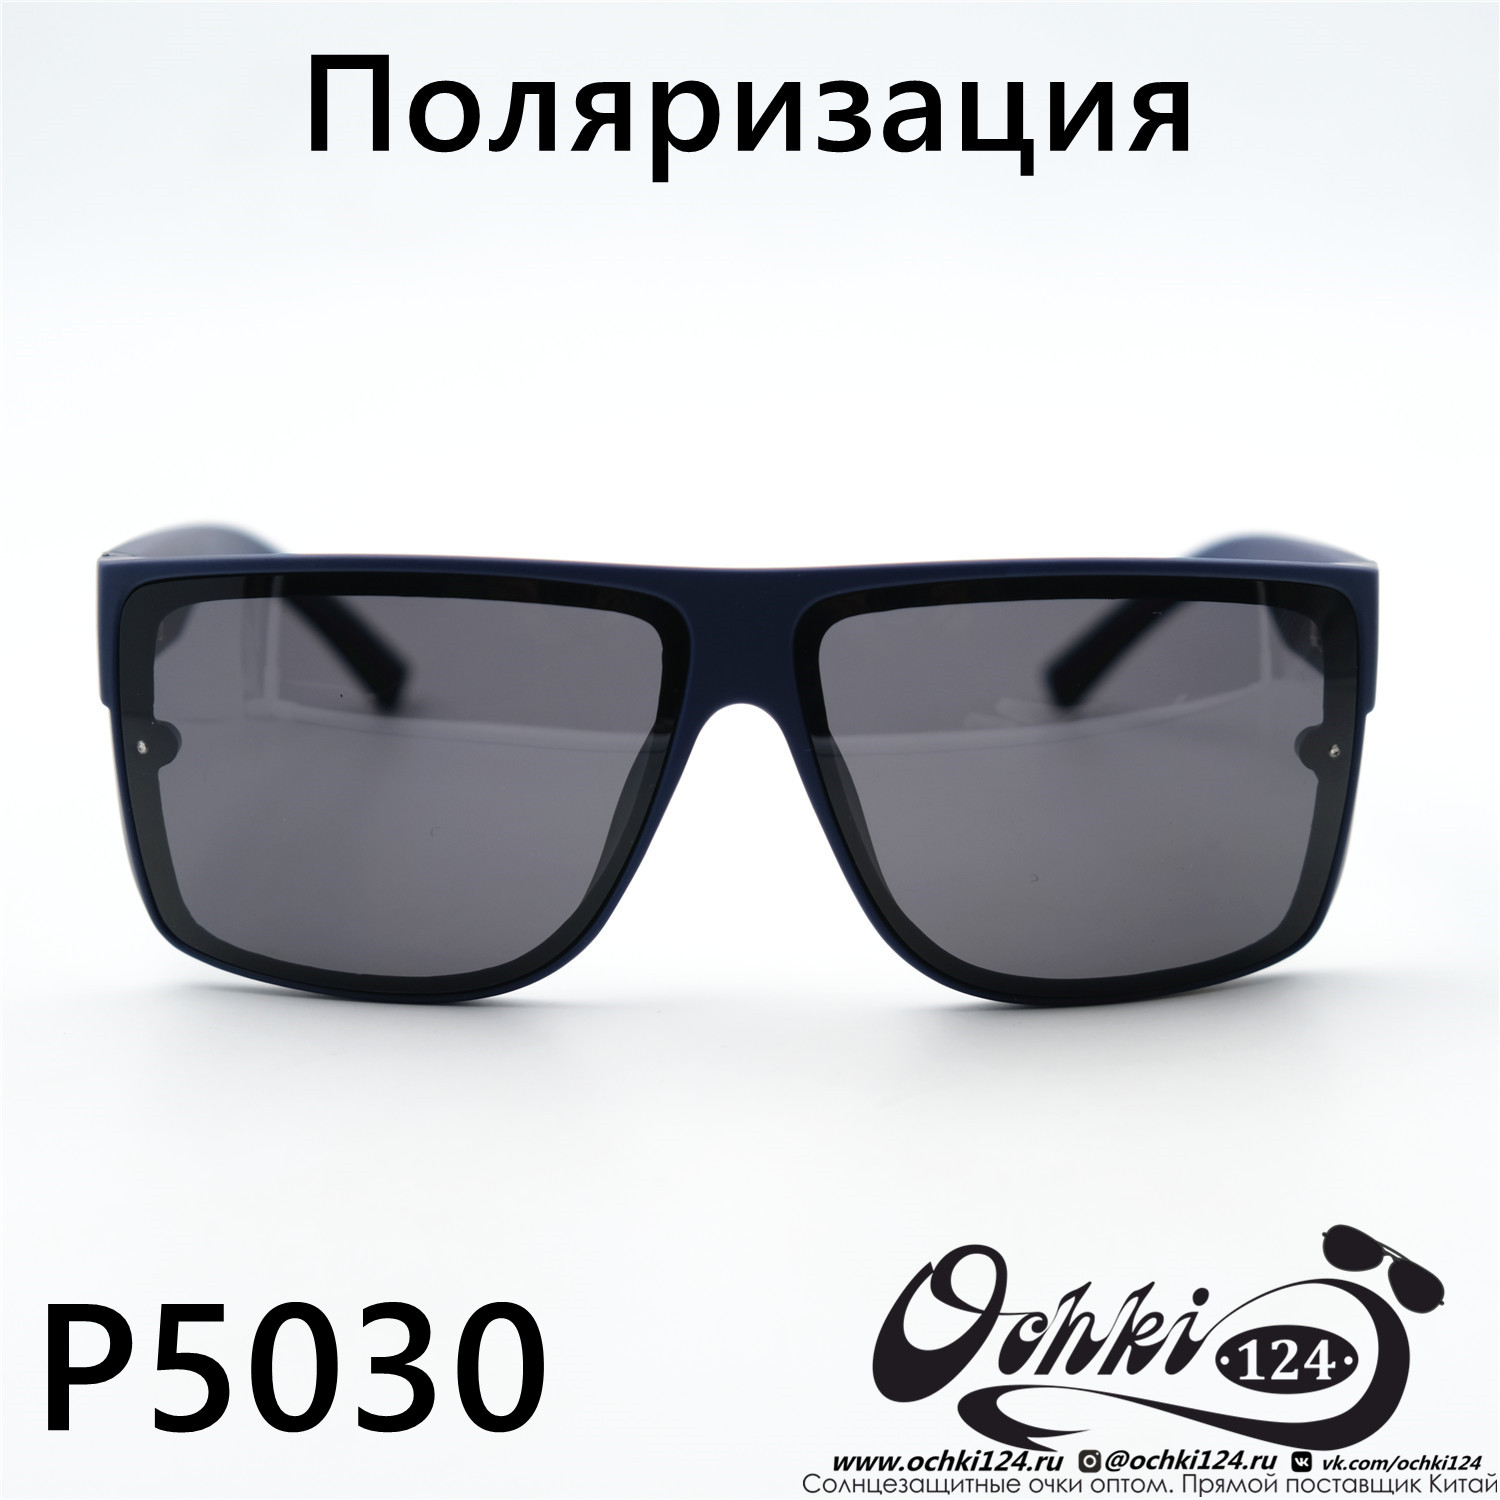  Солнцезащитные очки картинка 2023 Мужские Стандартные Maiersha P5030-C4 